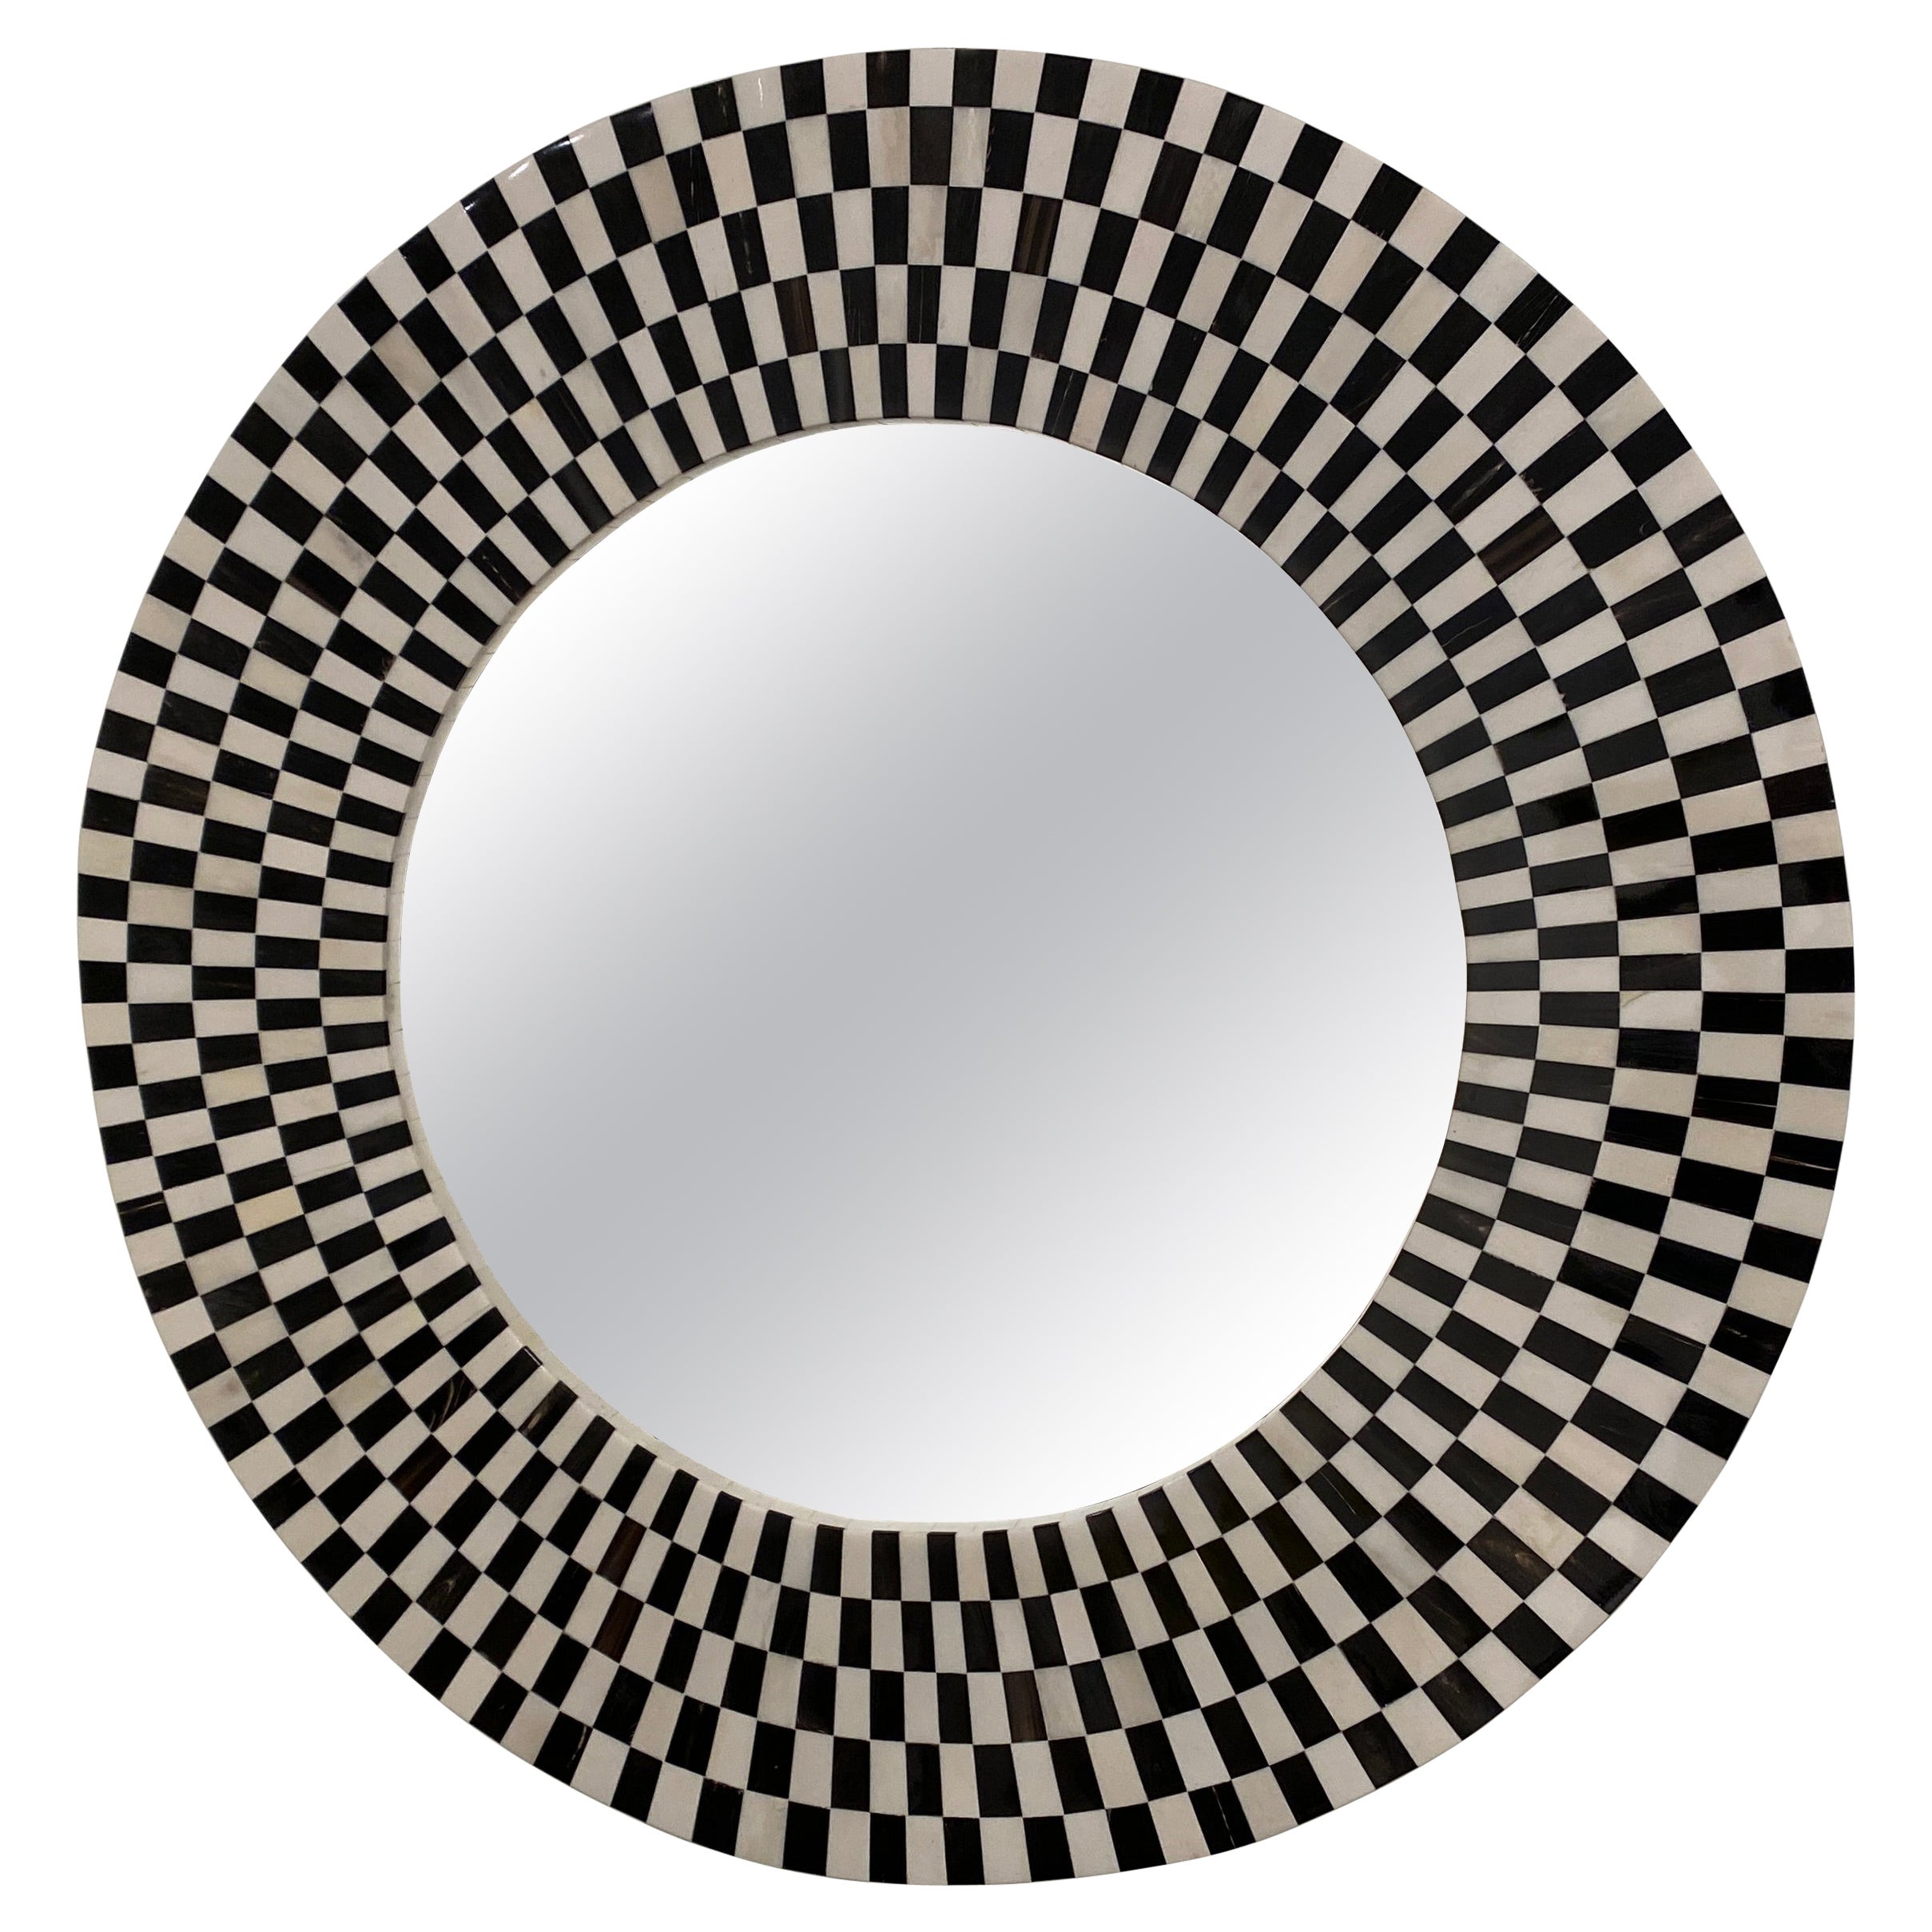 Runder Spiegel aus Knochen und Horn in Schwarz und Weiß, Kaliedoscope